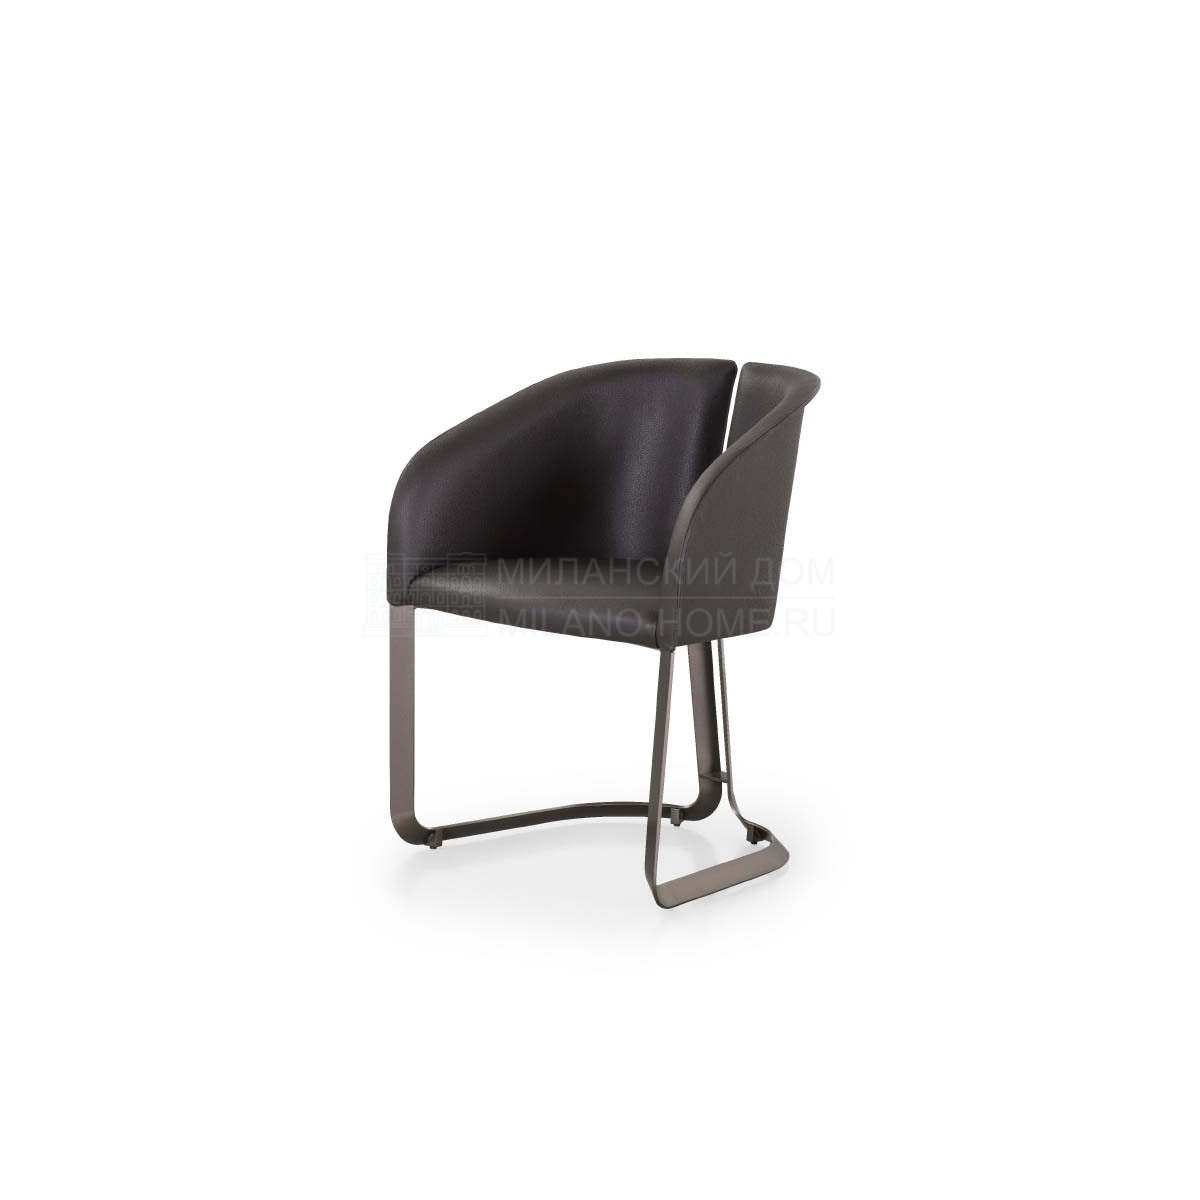 Кожаный стул Milano leather chair из Италии фабрики TURRI